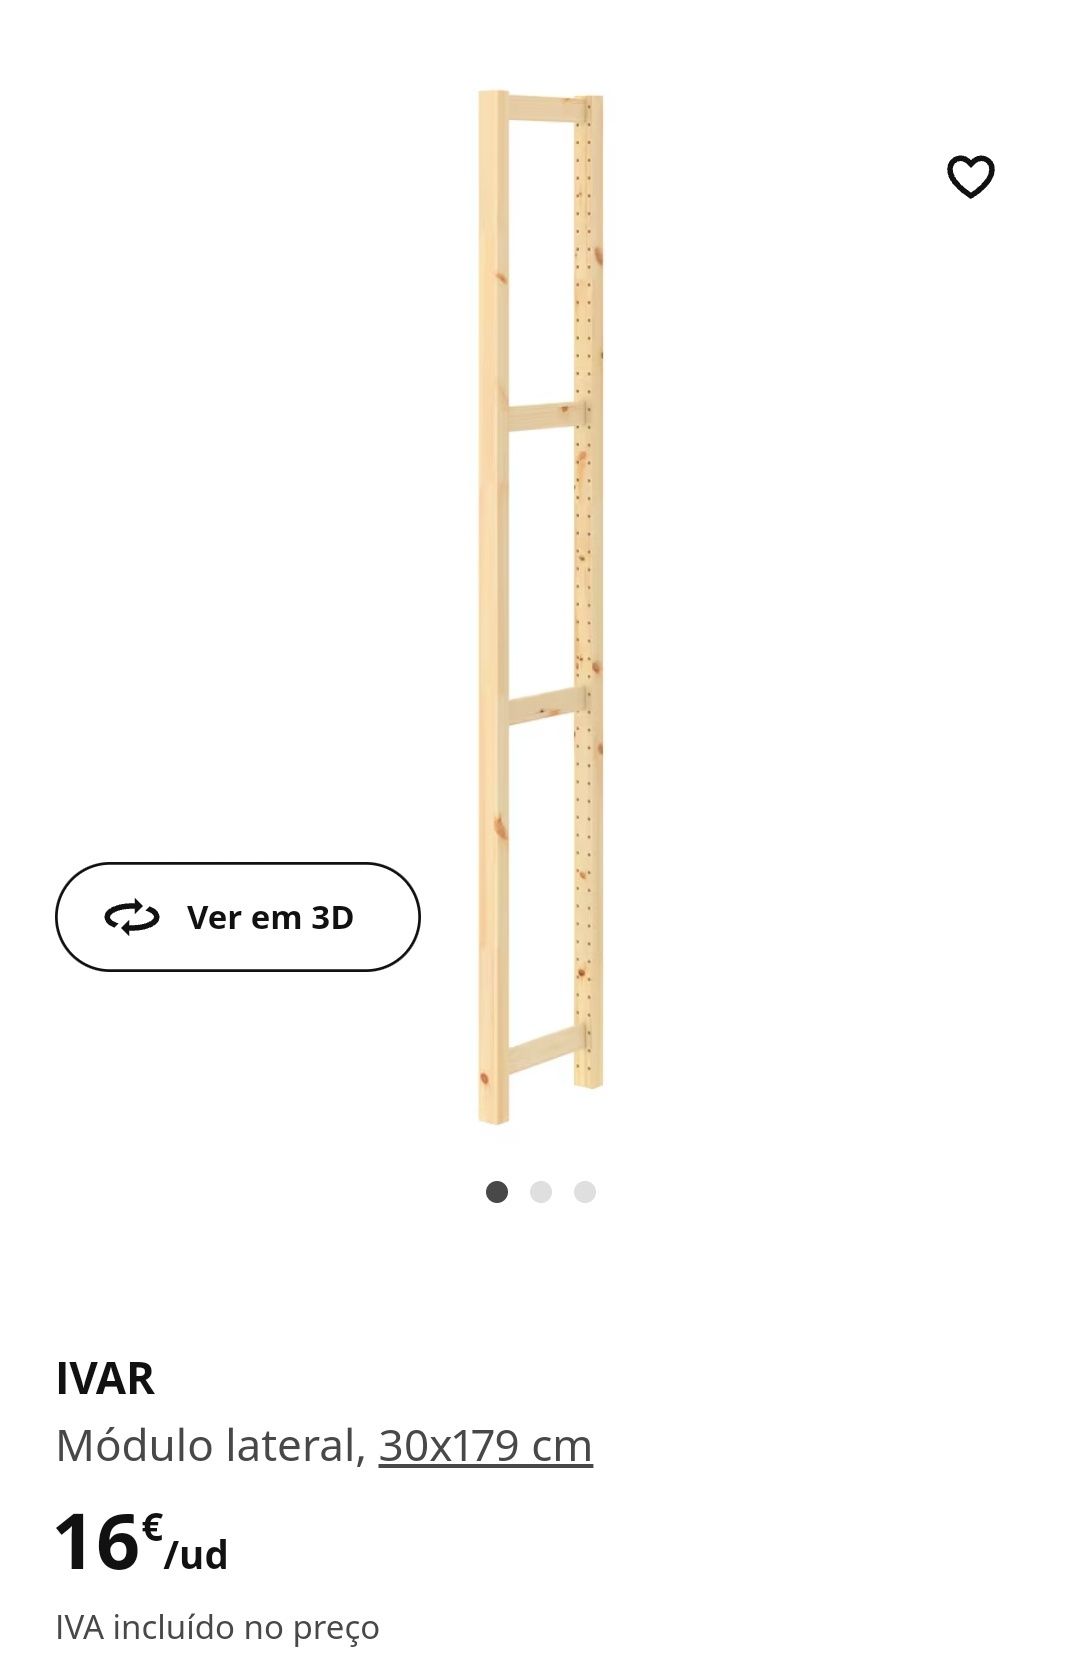 Módulo lateral Ivar IKEA 30x179